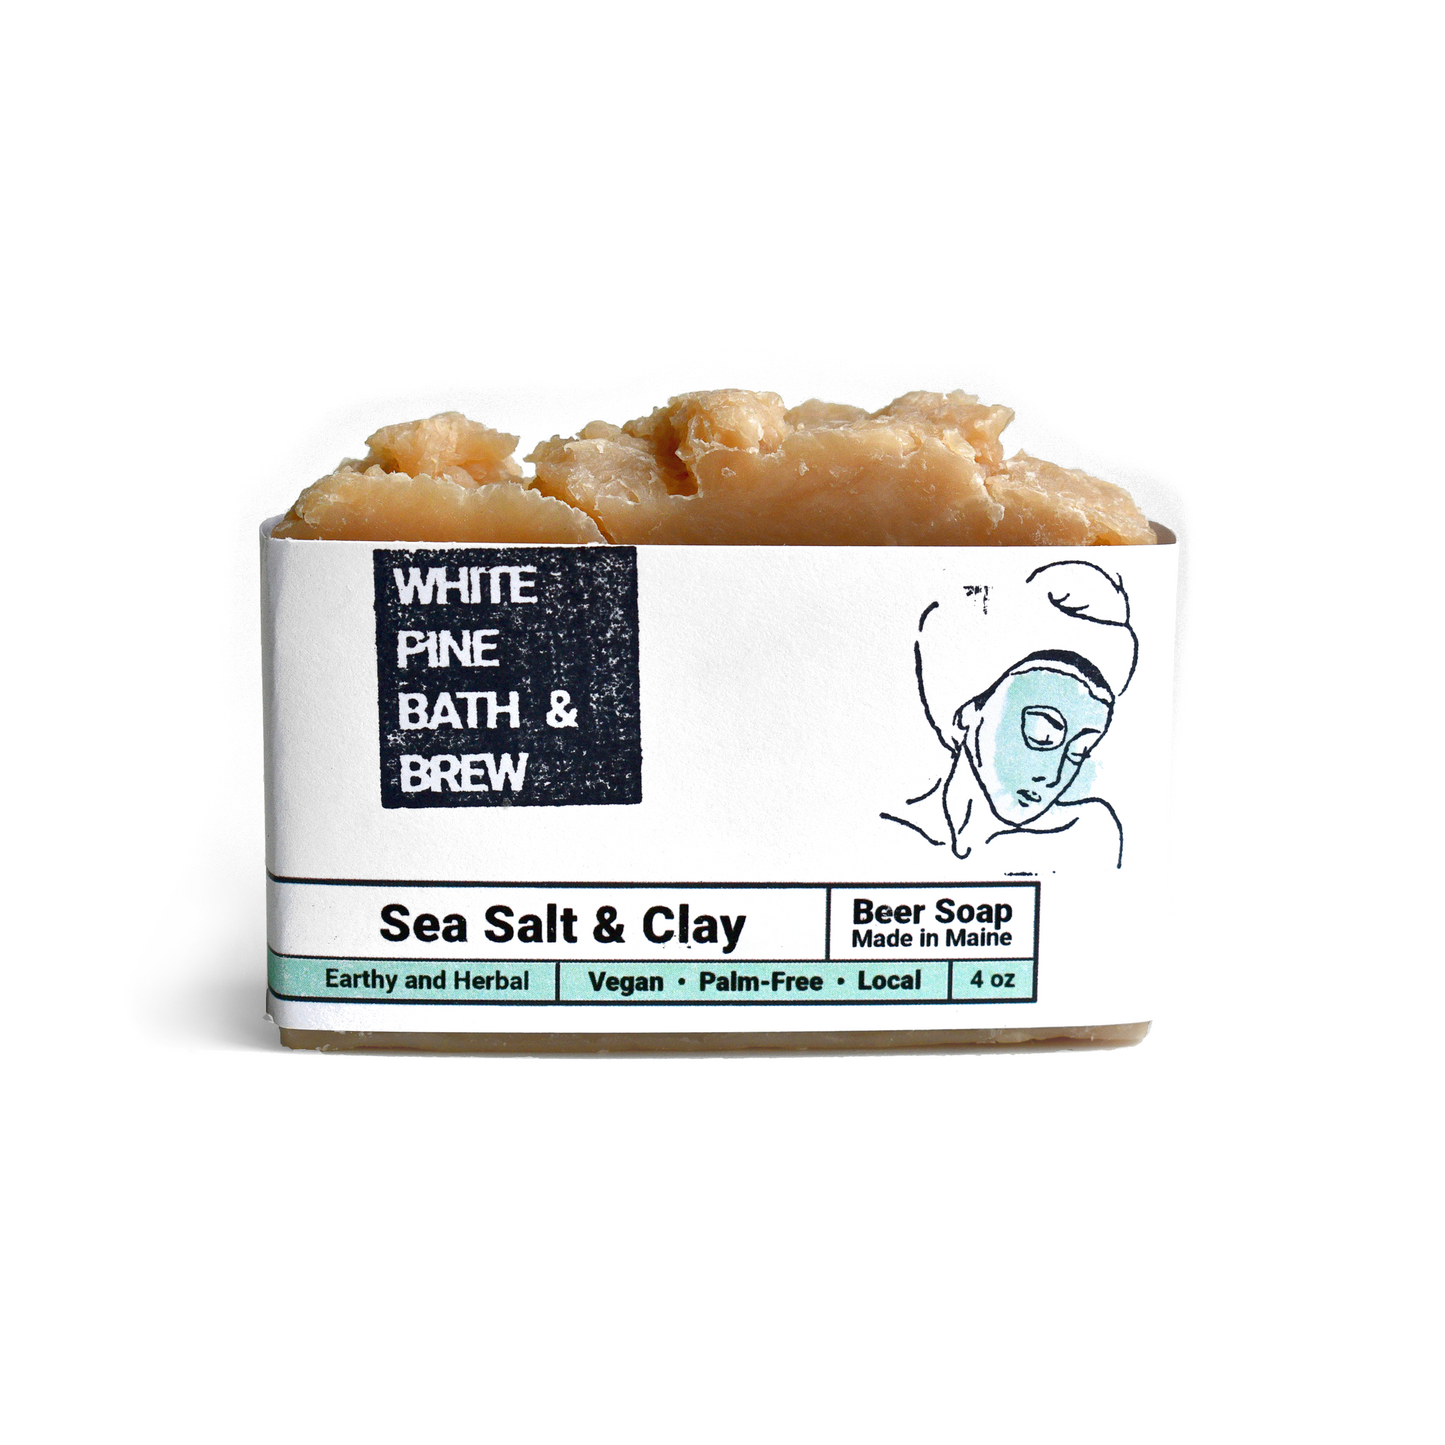 Sea Salt & Clay